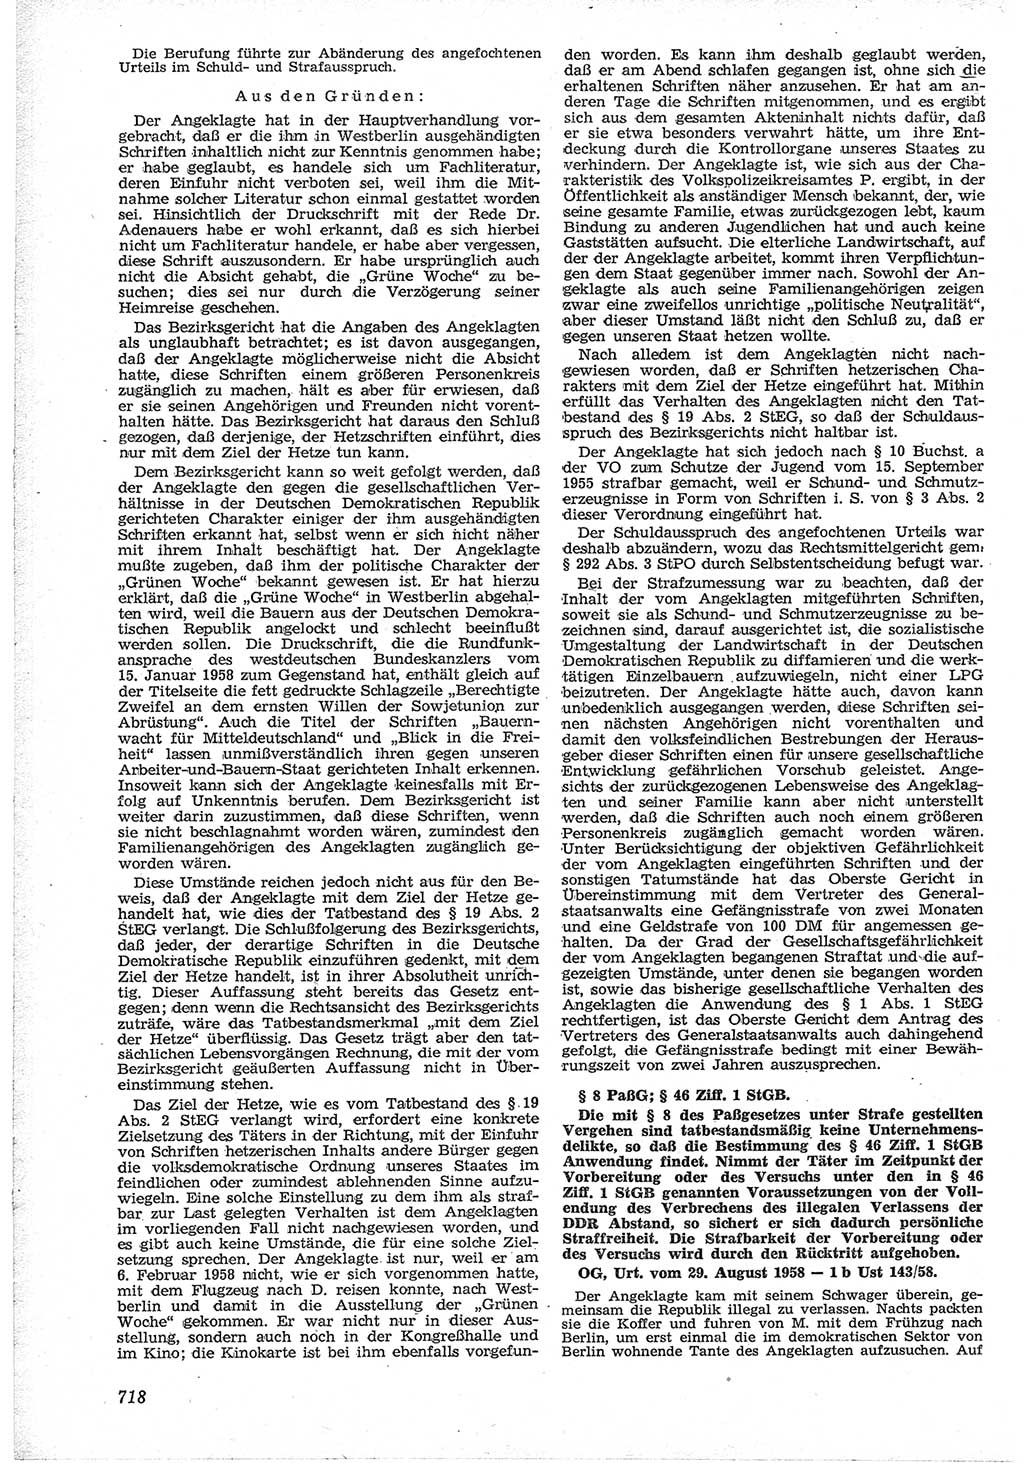 Neue Justiz (NJ), Zeitschrift für Recht und Rechtswissenschaft [Deutsche Demokratische Republik (DDR)], 12. Jahrgang 1958, Seite 718 (NJ DDR 1958, S. 718)